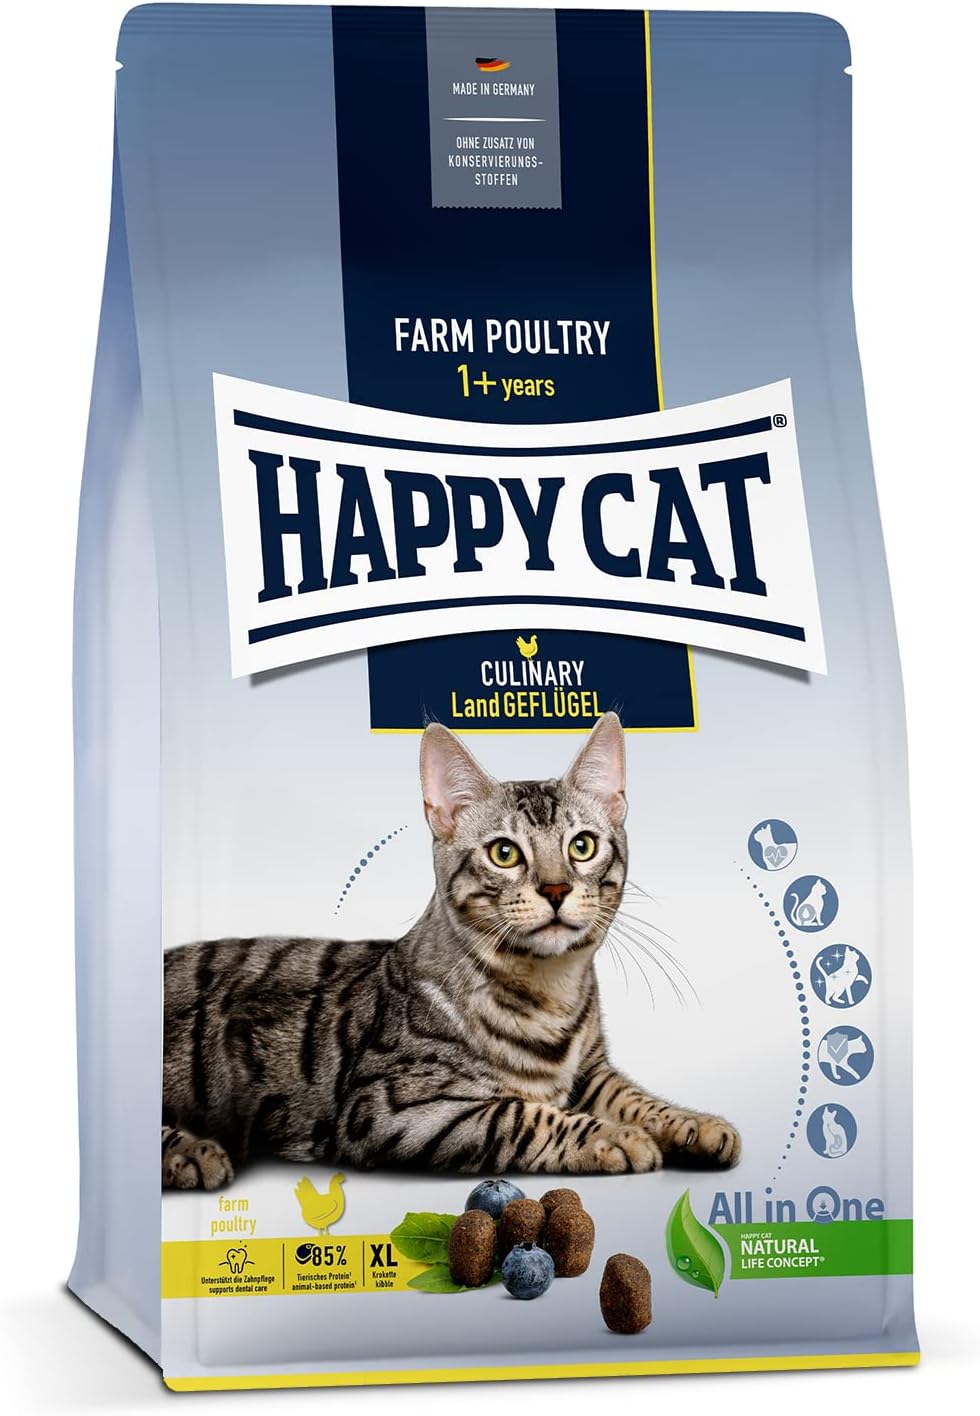 Happy Cat Culinary Land Geflugel 0.3 kg